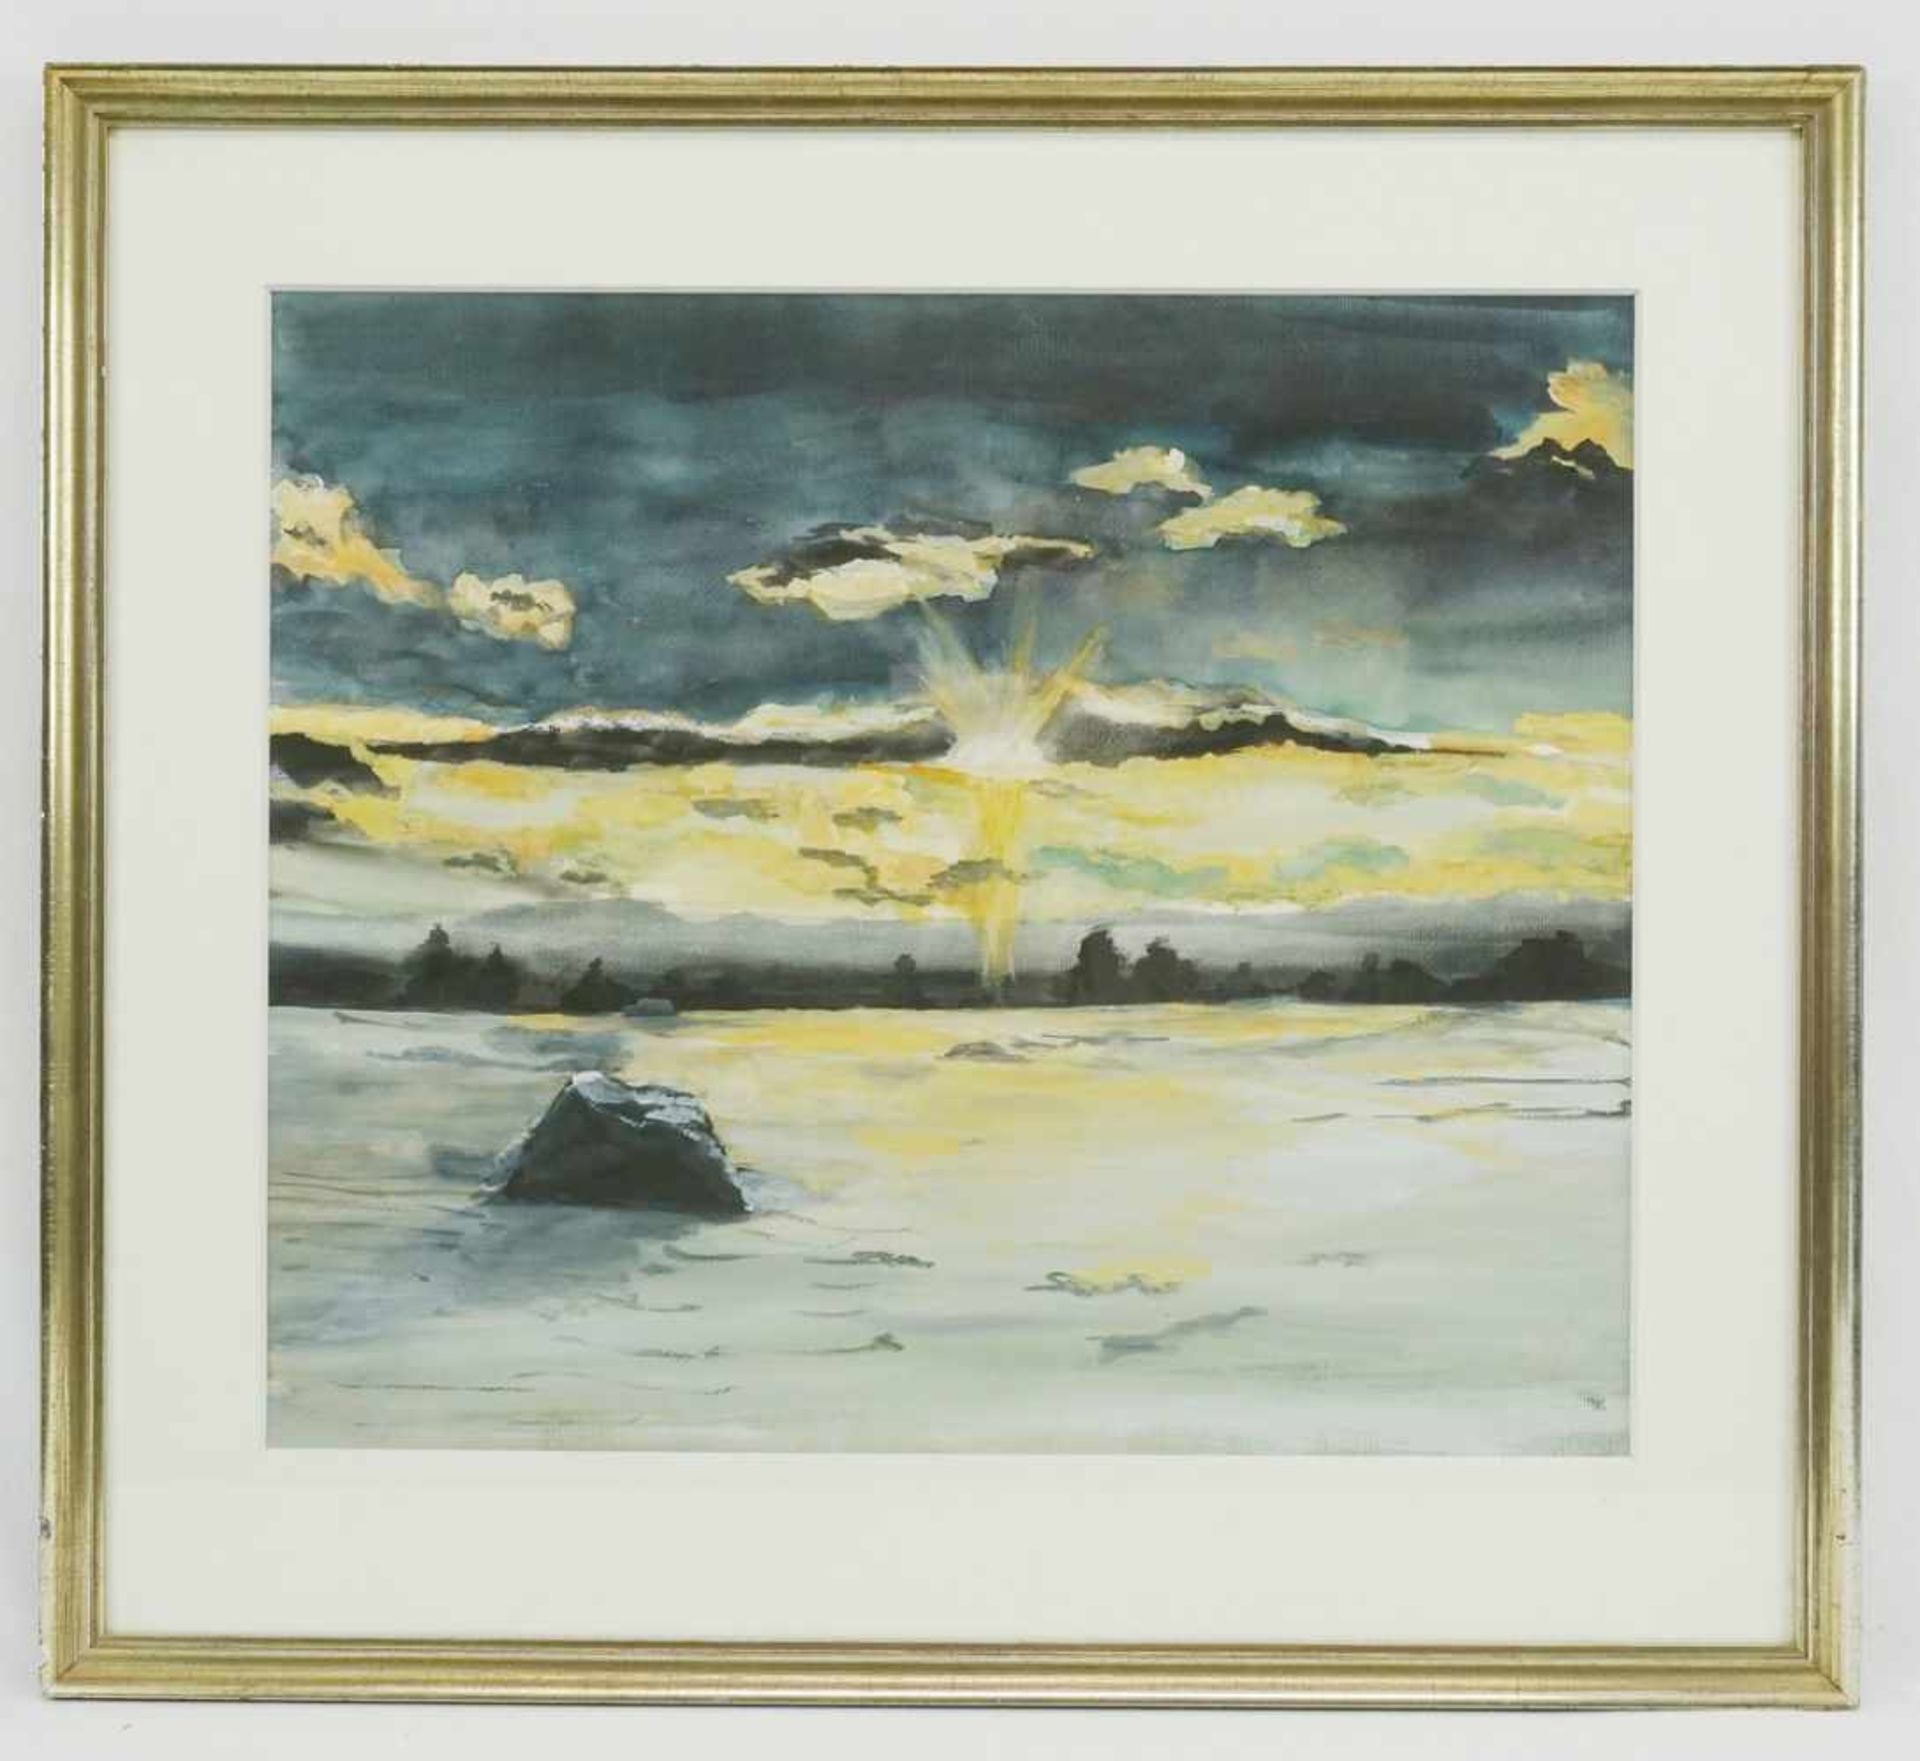 Unbekannter Maler, "Dramatischer Sonnenuntergang"Temperamalerei, guter Zustand, 45 x 54 cm (HxB), - Bild 2 aus 4